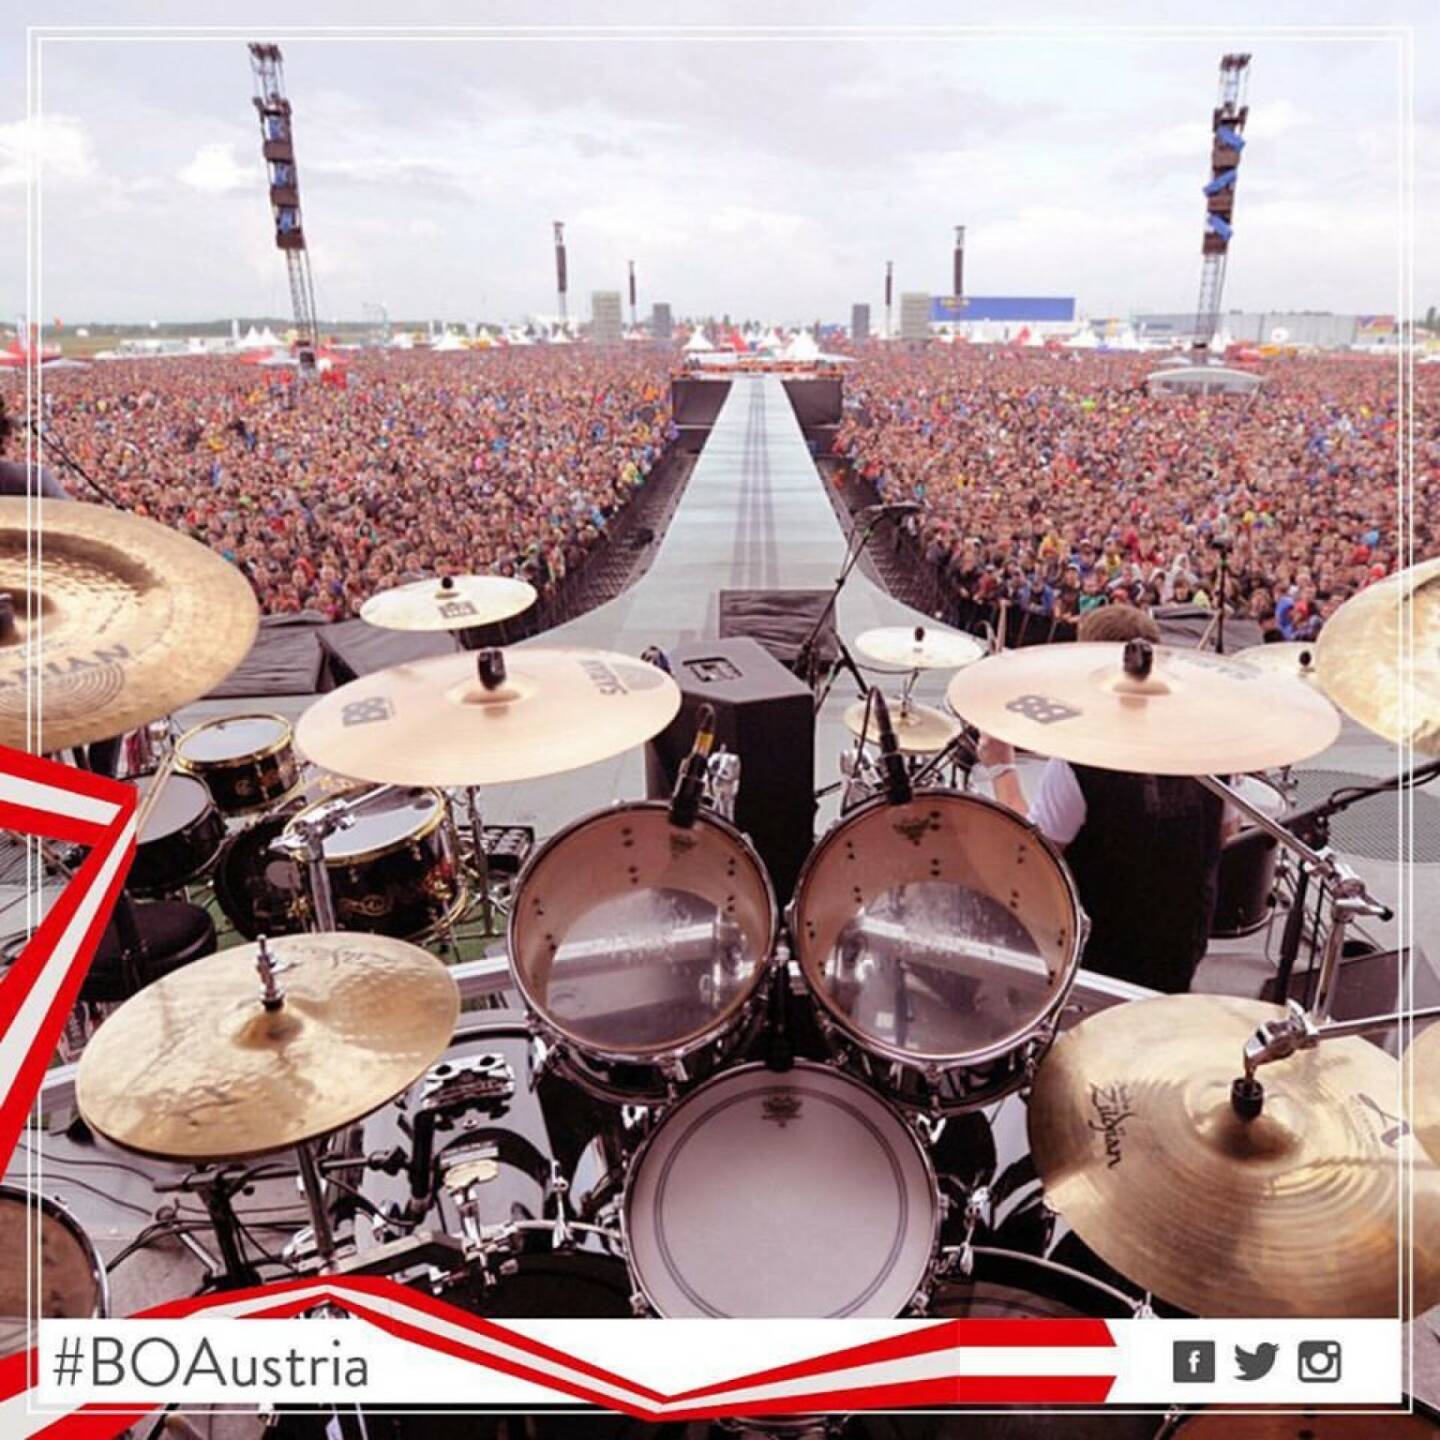 Ausblick von der Bühne während eines AC/DC Konzerts (c) Philip Martin Rusch